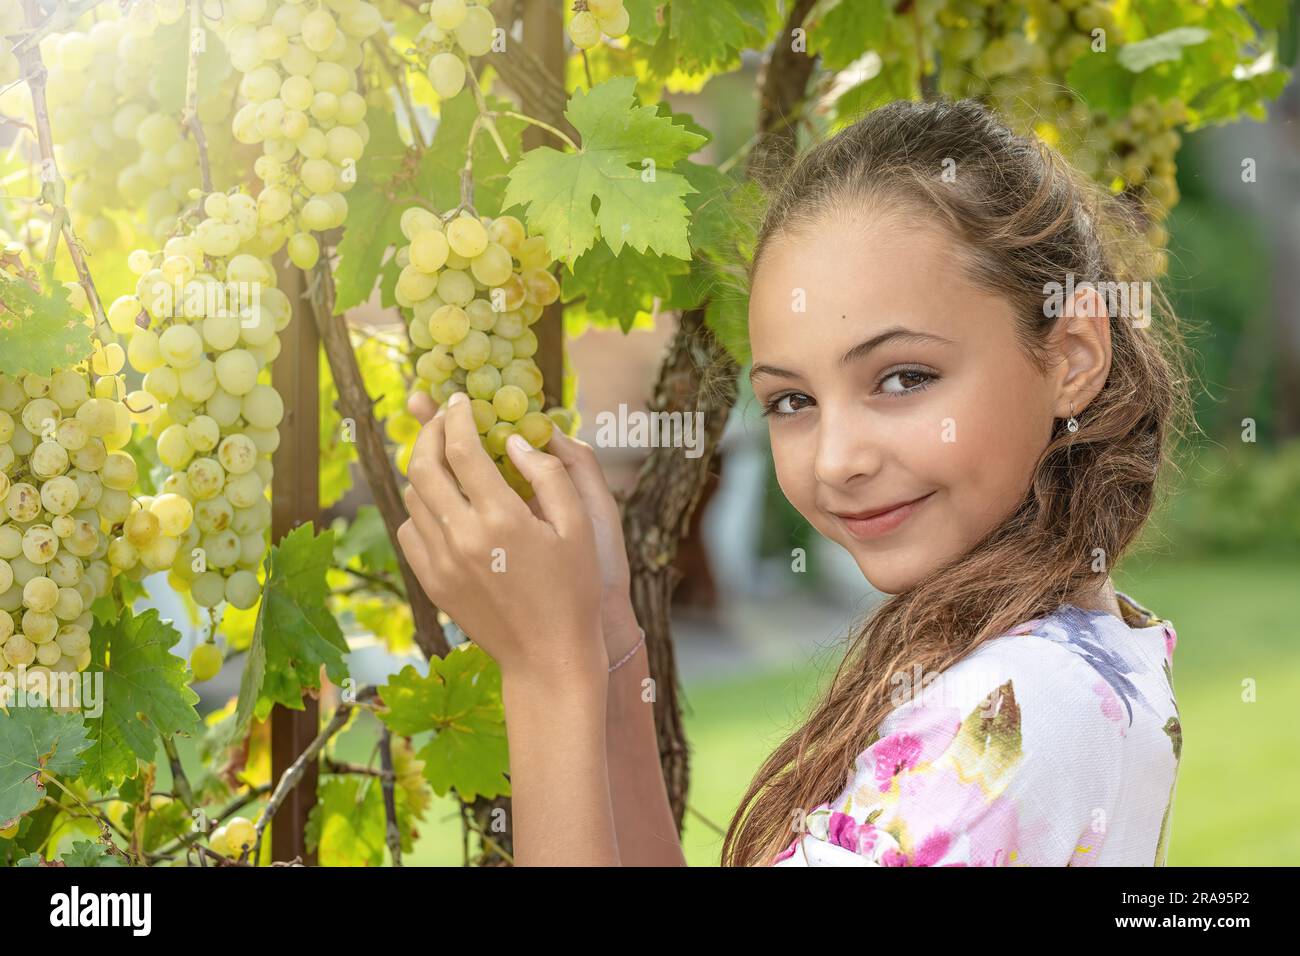 Jolie petite fille à poil long montre des raisins mûrs souriant à l'appareil photo. Concept de la récolte du vin. Banque D'Images